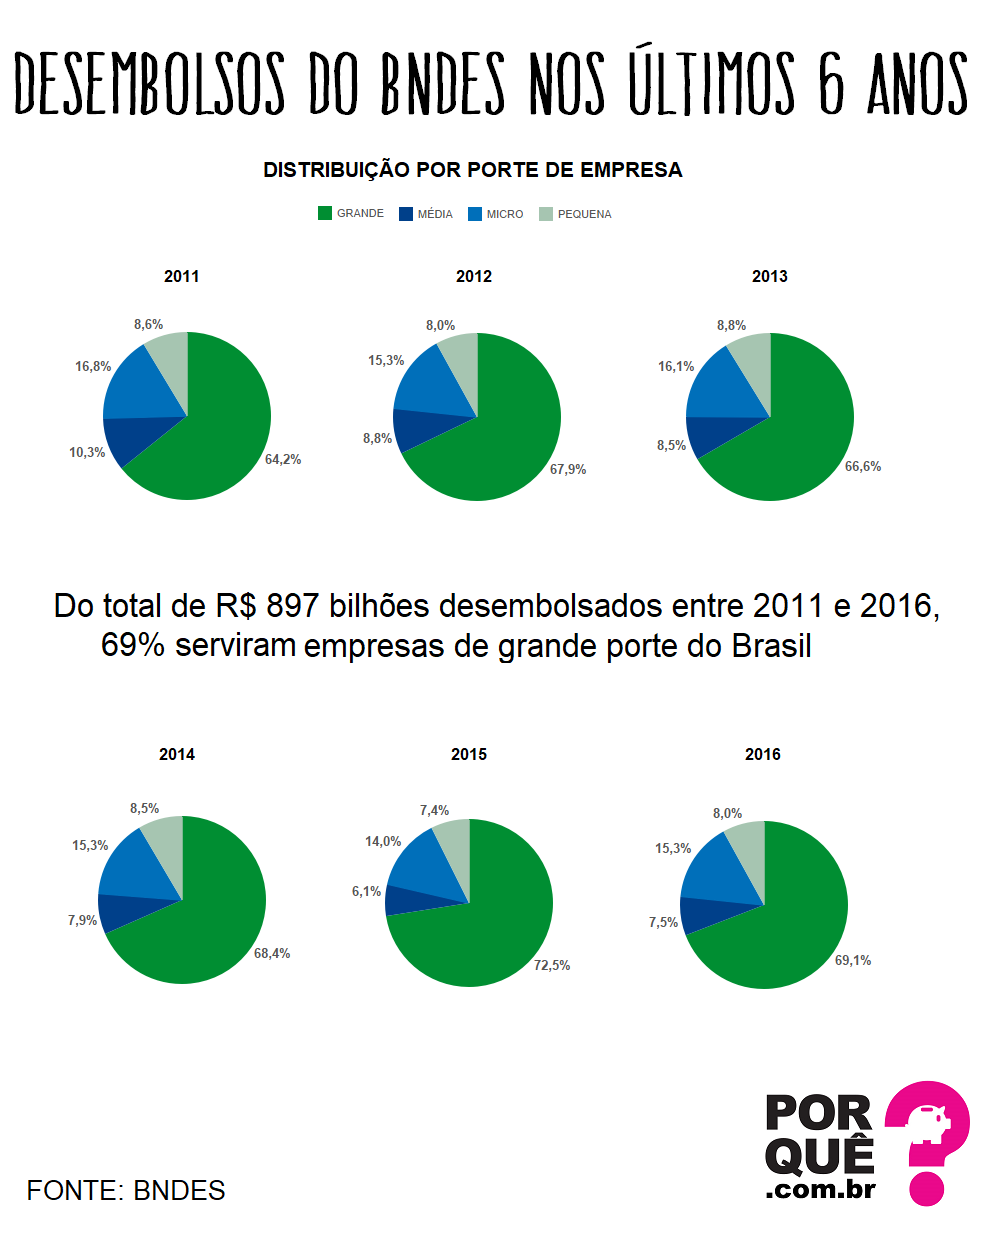 BNDES-DESEMBOLSOS-2011-2016